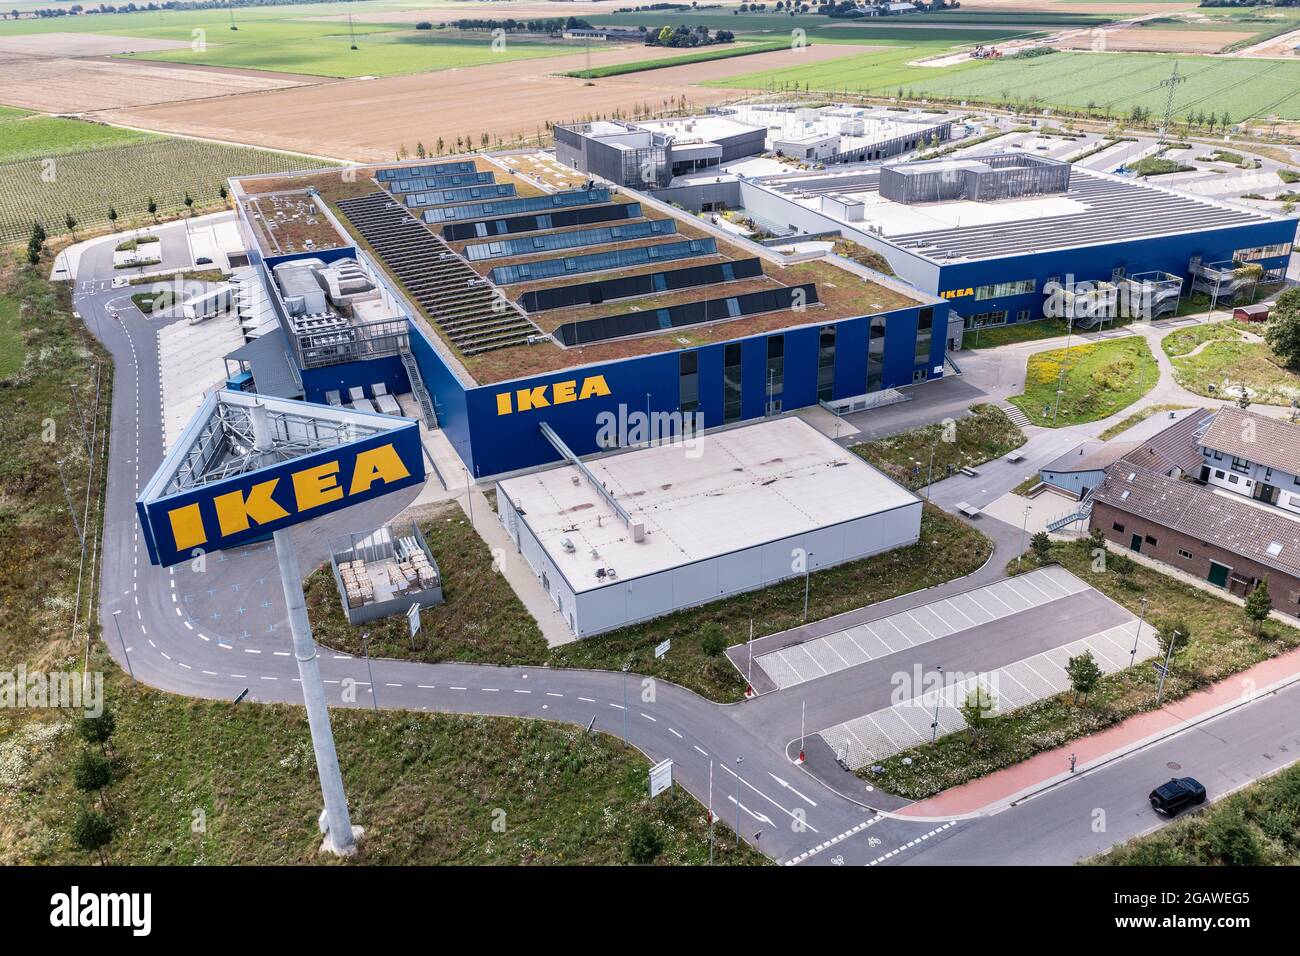 Luftaufnahme des Möbelhauses IKEA en Kaarst bei Düsseldorf. Der Bau gehört zu den größten Ikea-Einrichtungshäusern en Alemania. Foto de stock